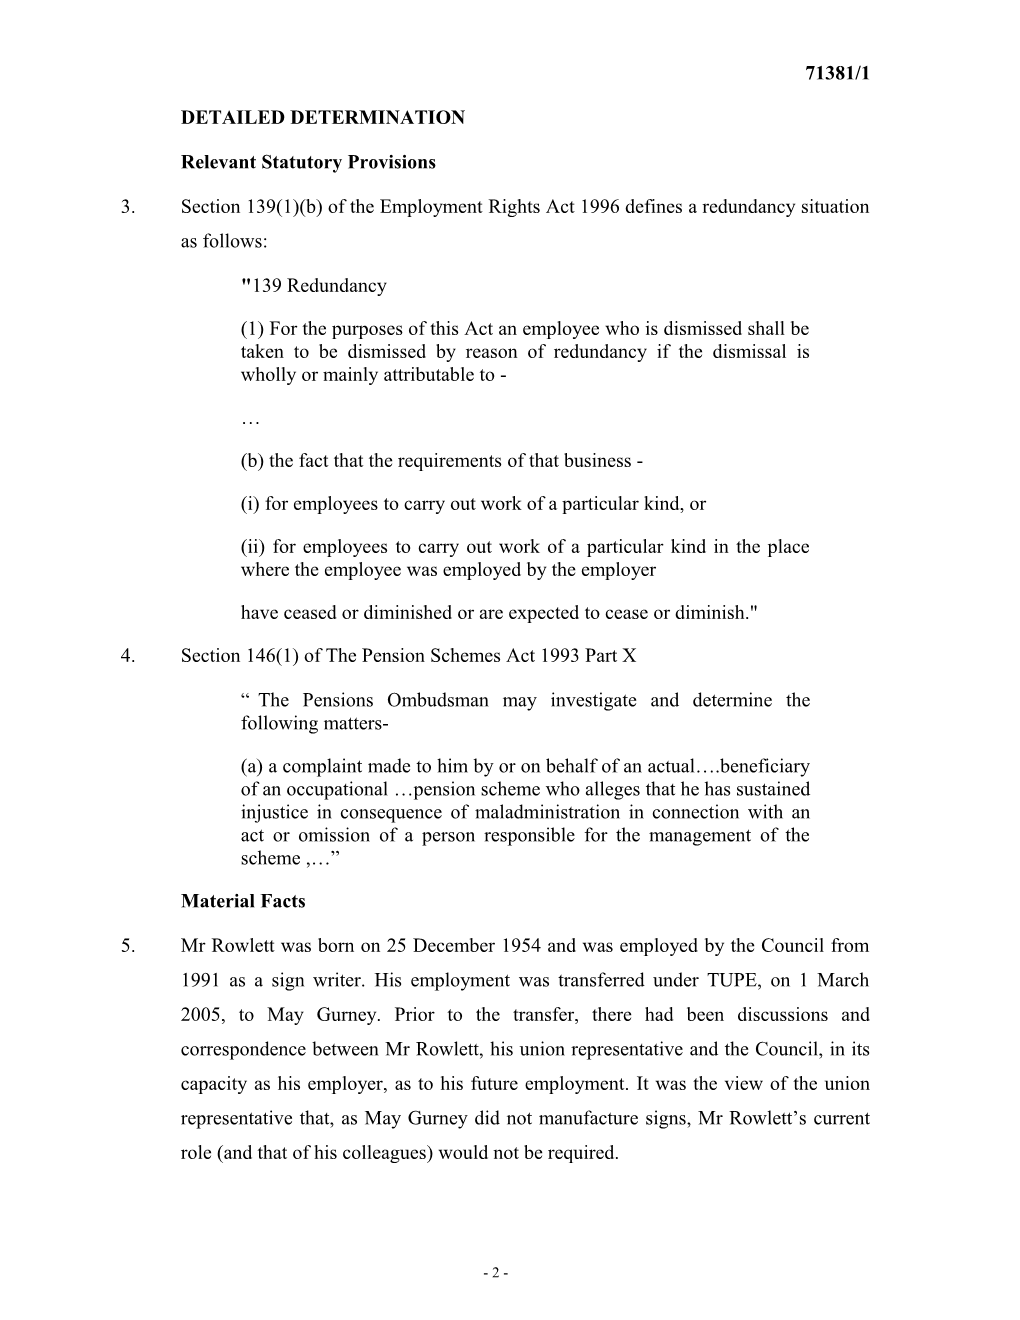 Pension Schemes Act 1993, Part X s20